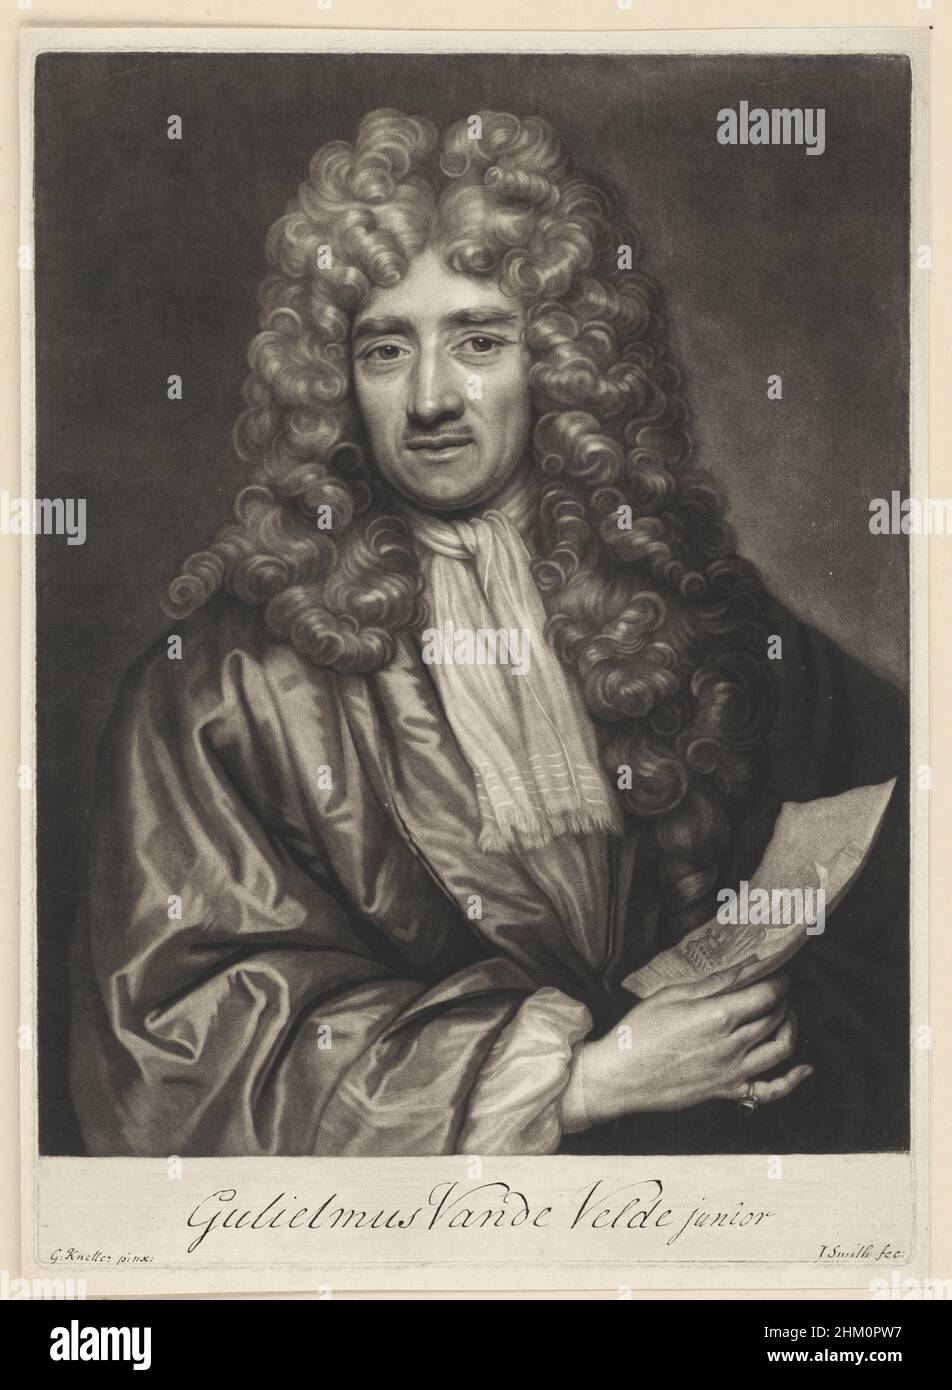 Portret Willem van de Velde op 74-jarige leeftijd Gulielmus Vande Velde junior (titel op object), RP-P-OB-32.864 Stock Photo